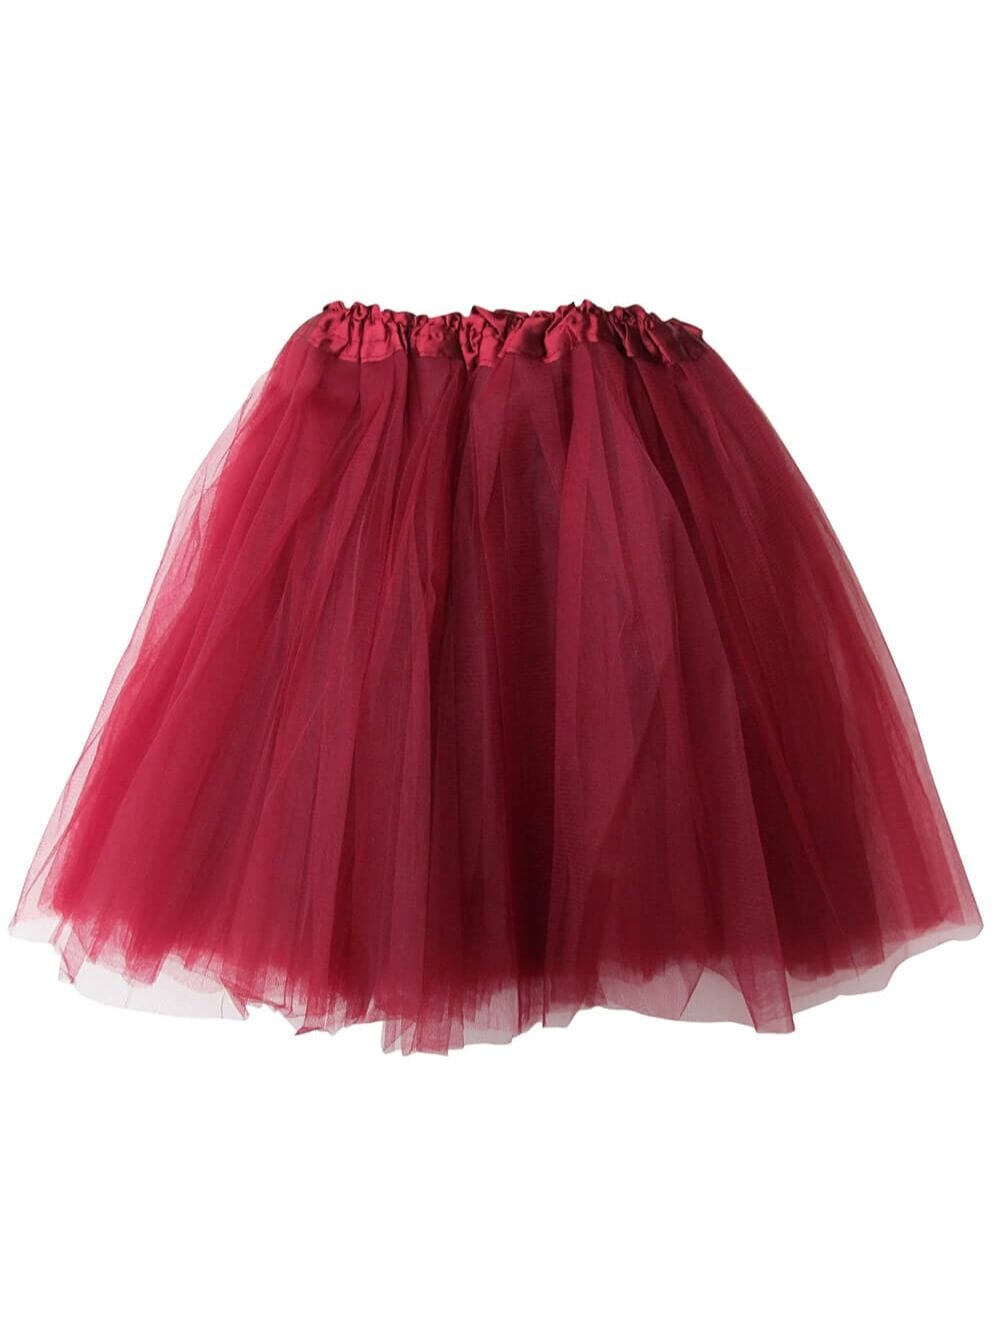 Burgundy Tutu Skirt for Adult - Women's Size 3-Layer Basic Ballet Costume Dance Tutus - Sydney So Sweet